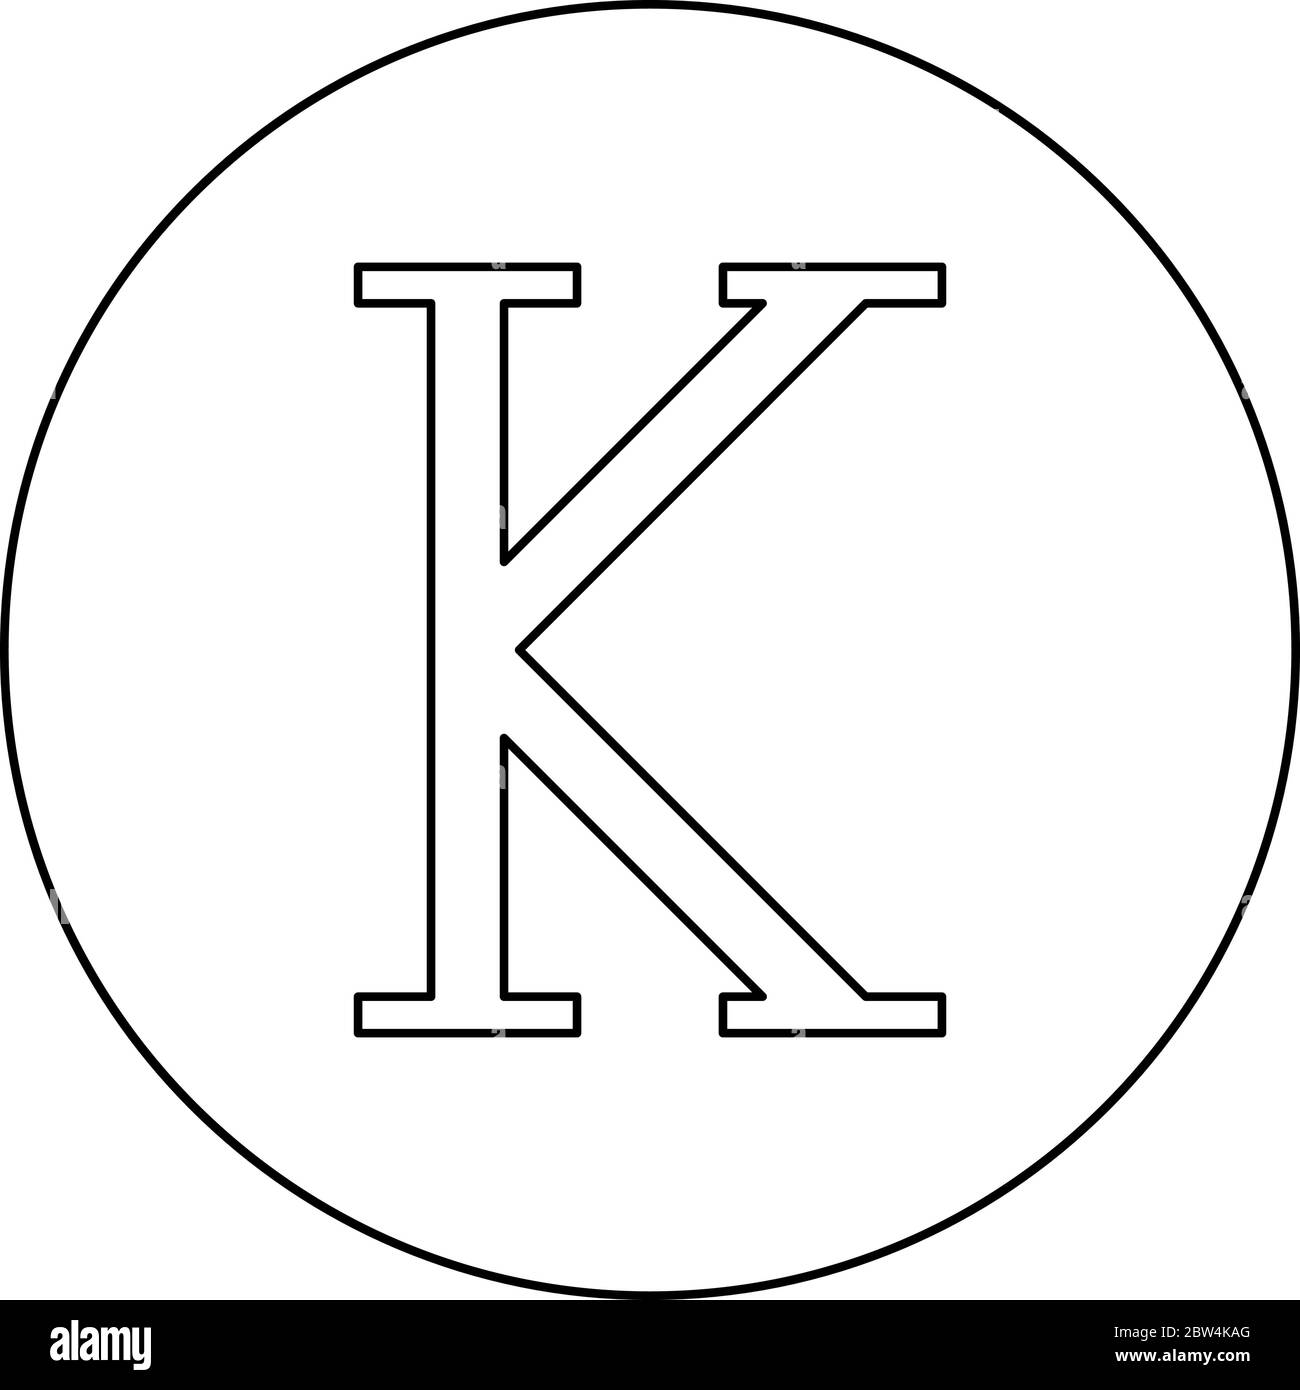 Kappa símbolo griego letra mayúscula letra mayúscula icono de fuente en  círculo contorno redondo color negro vector ilustración estilo plano imagen  simple Imagen Vector de stock - Alamy